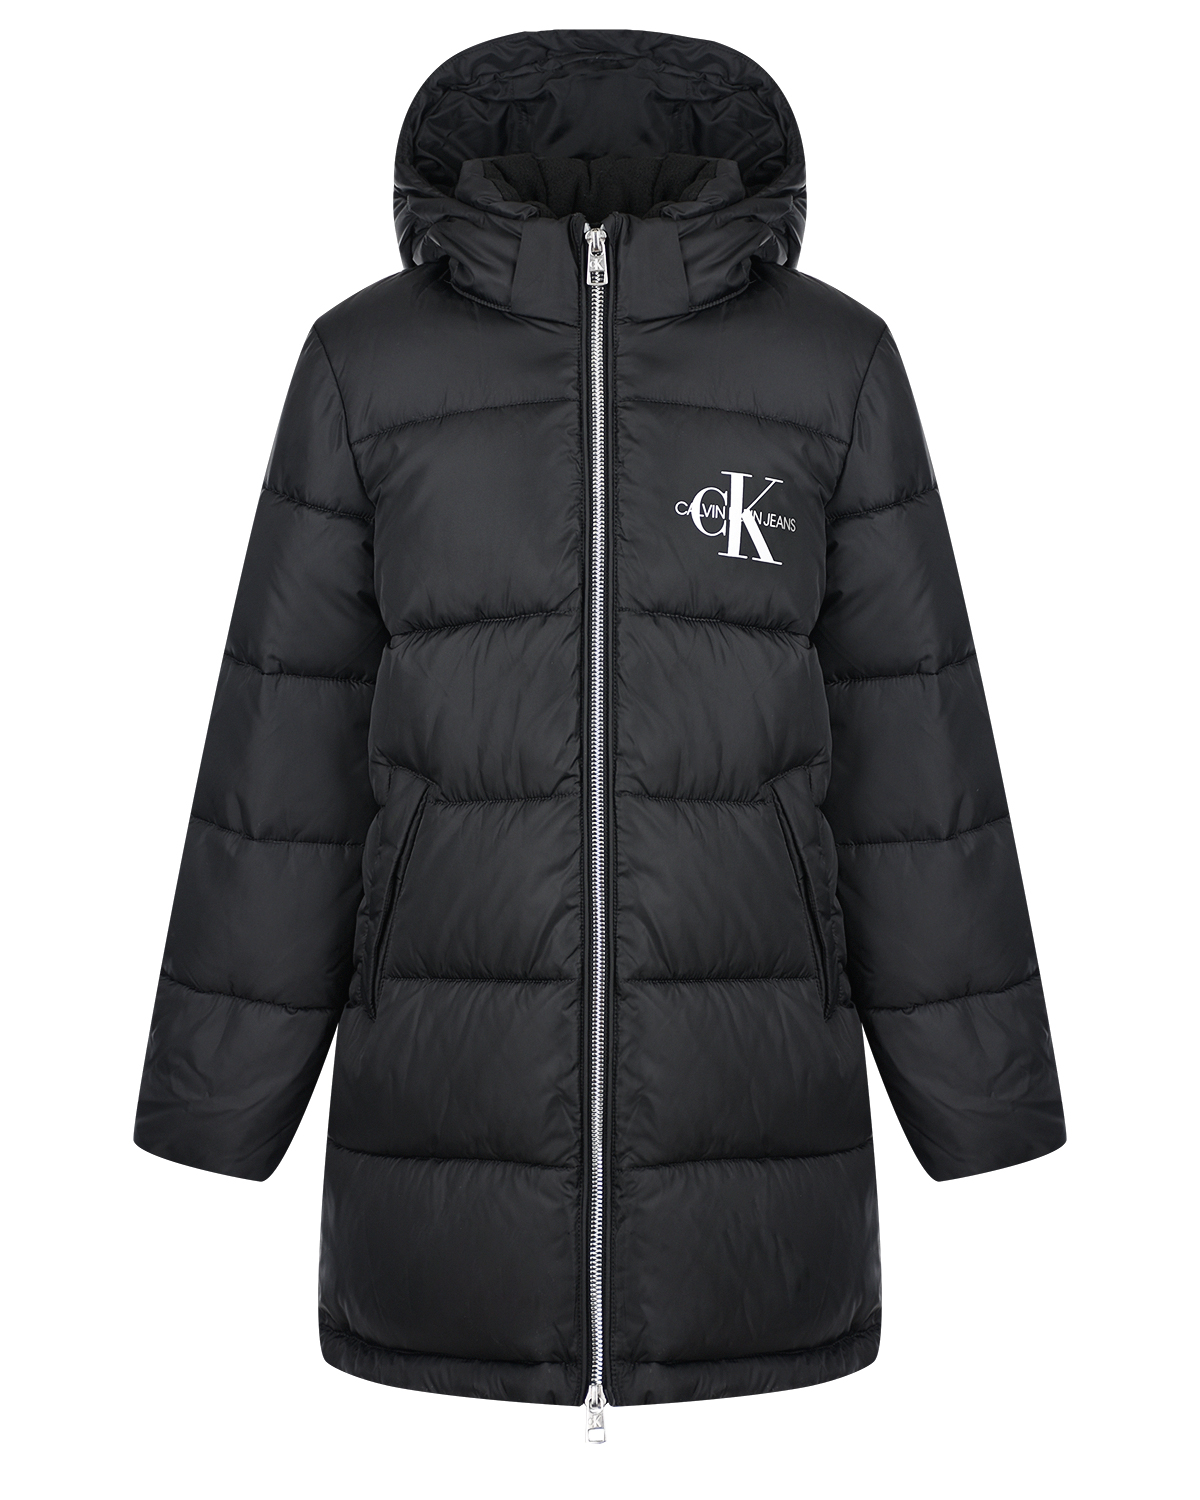 Удлиненная куртка с логотипом Calvin Klein детская, размер 176, цвет черный - фото 1